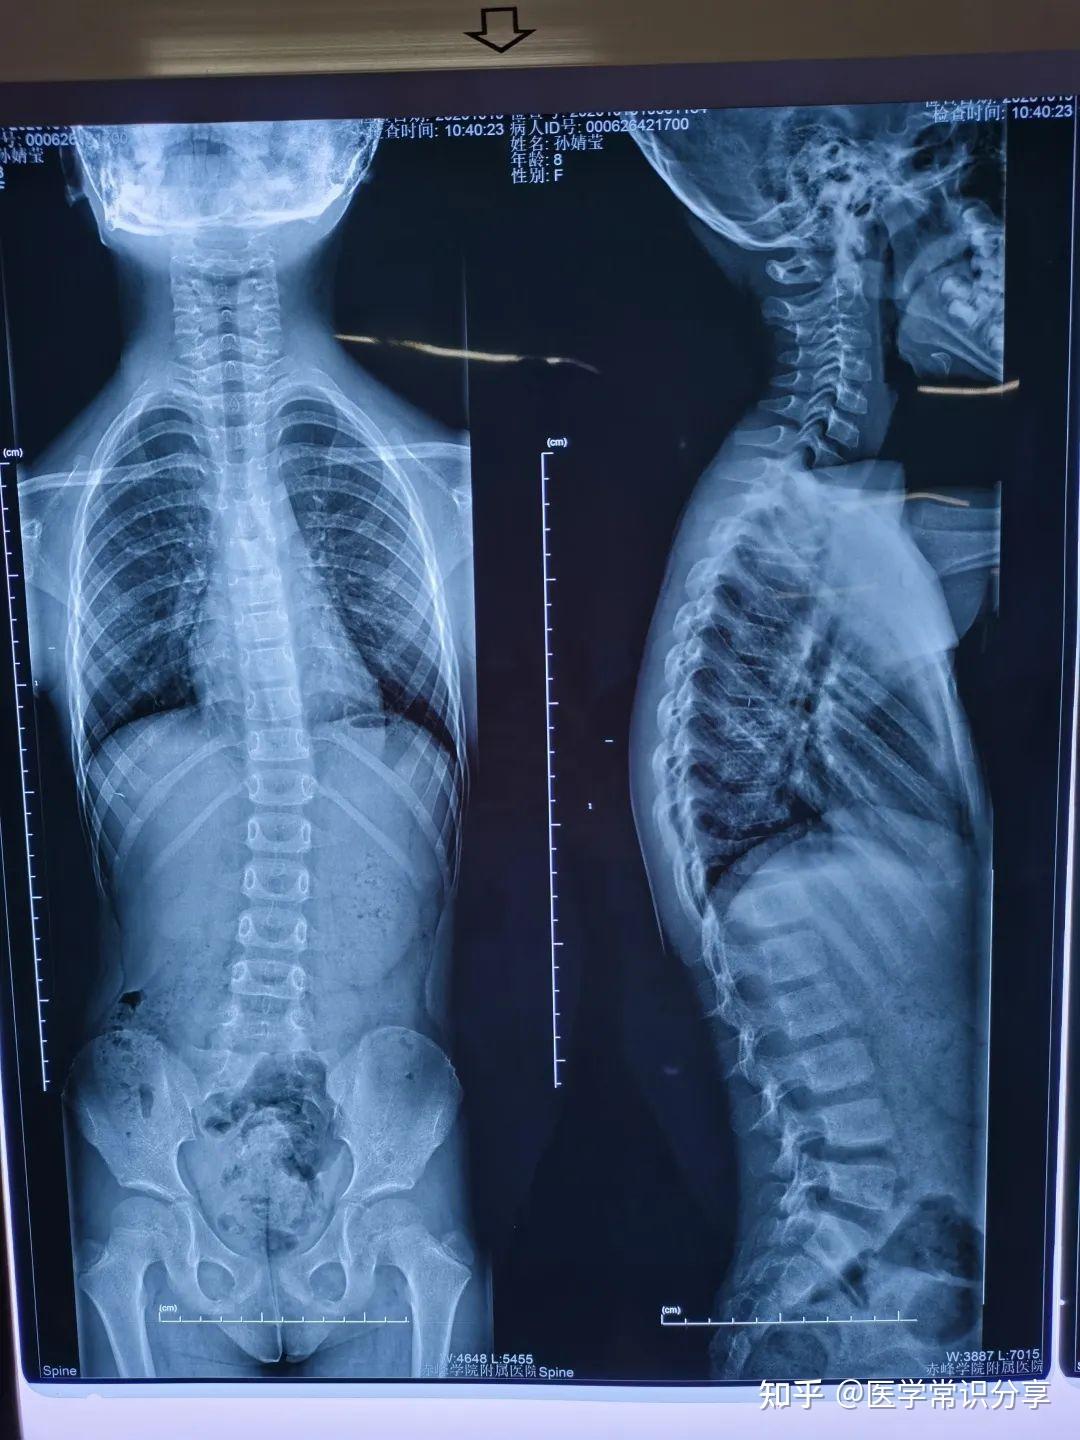 过治疗后▼进过治疗后脊柱侧弯情况明显得到改善,冠状面和矢状面的